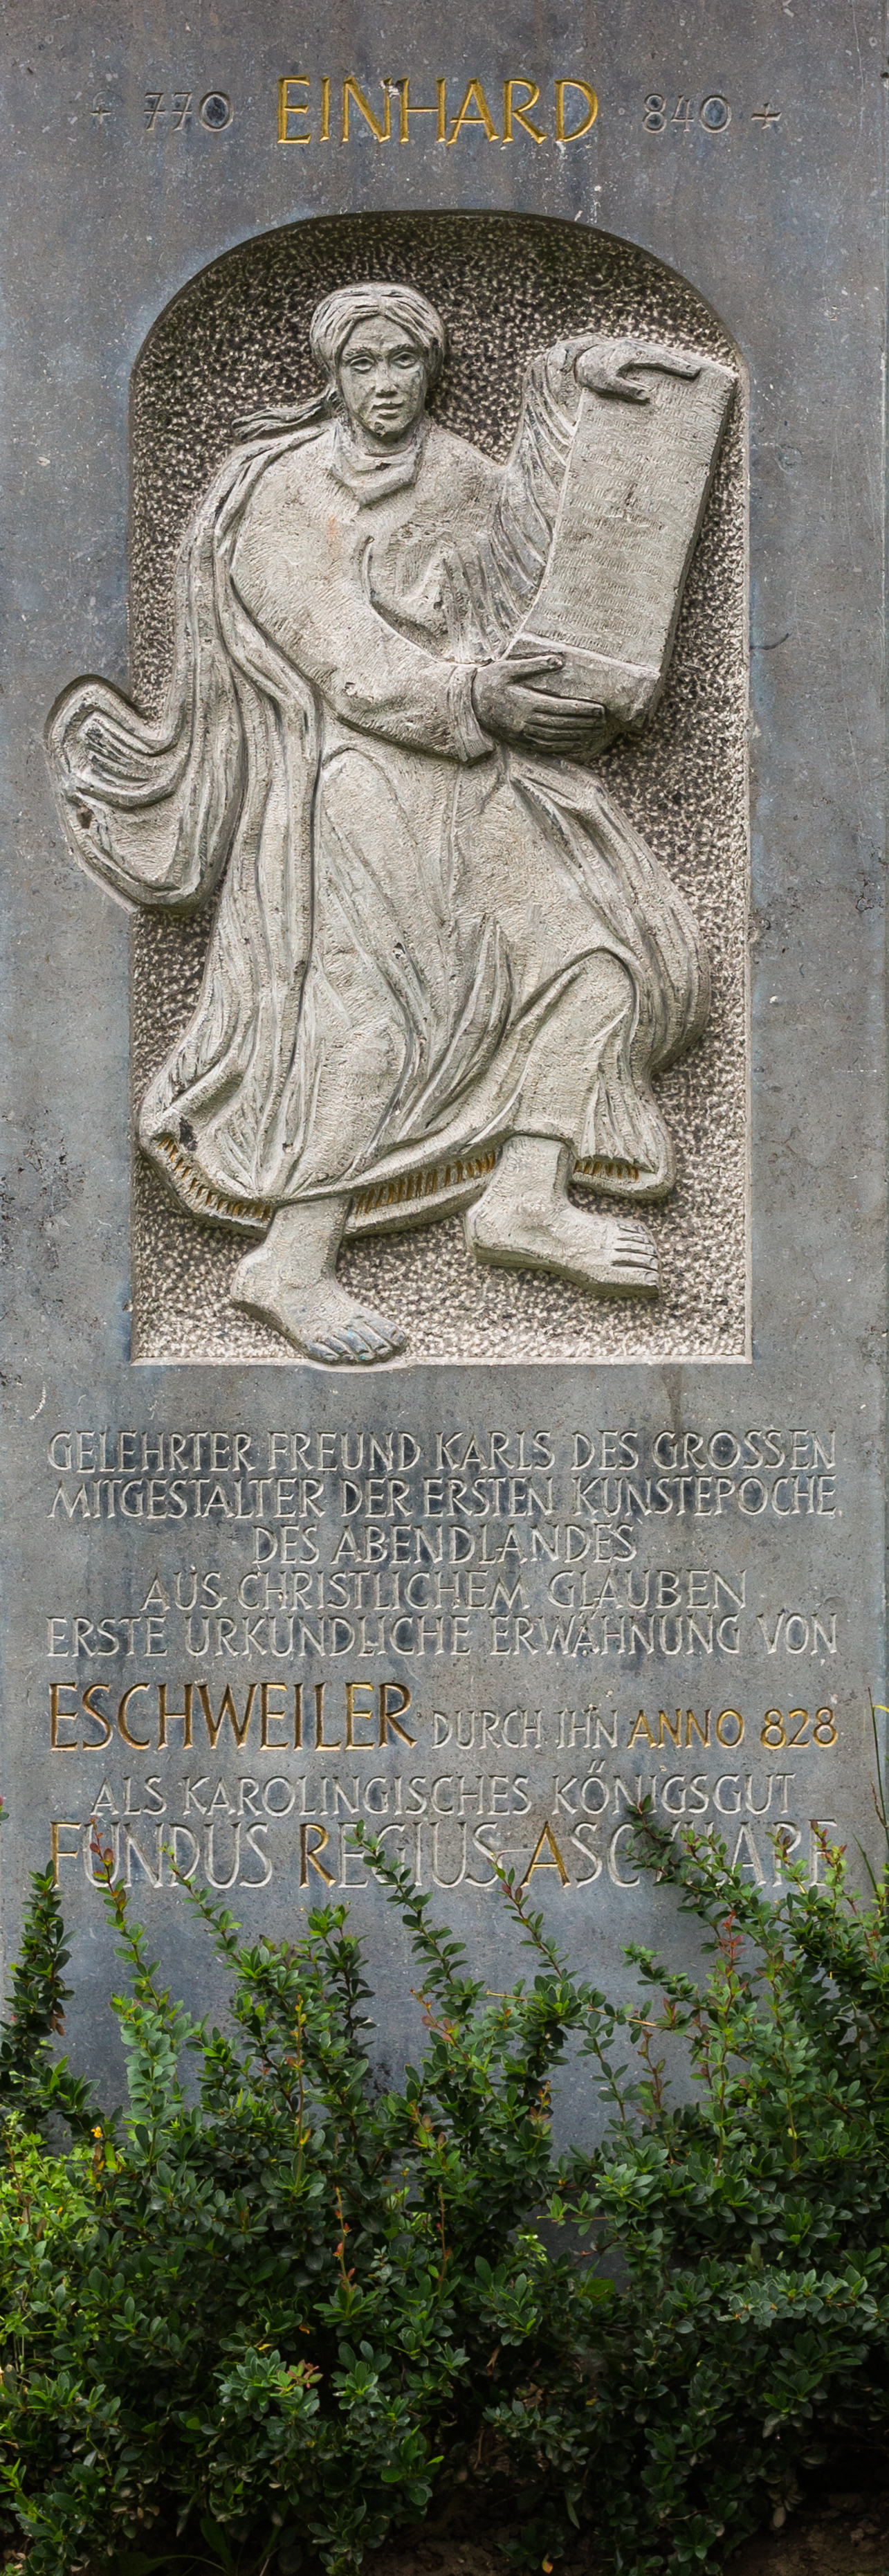 Denkmal Einhard Eschweiler